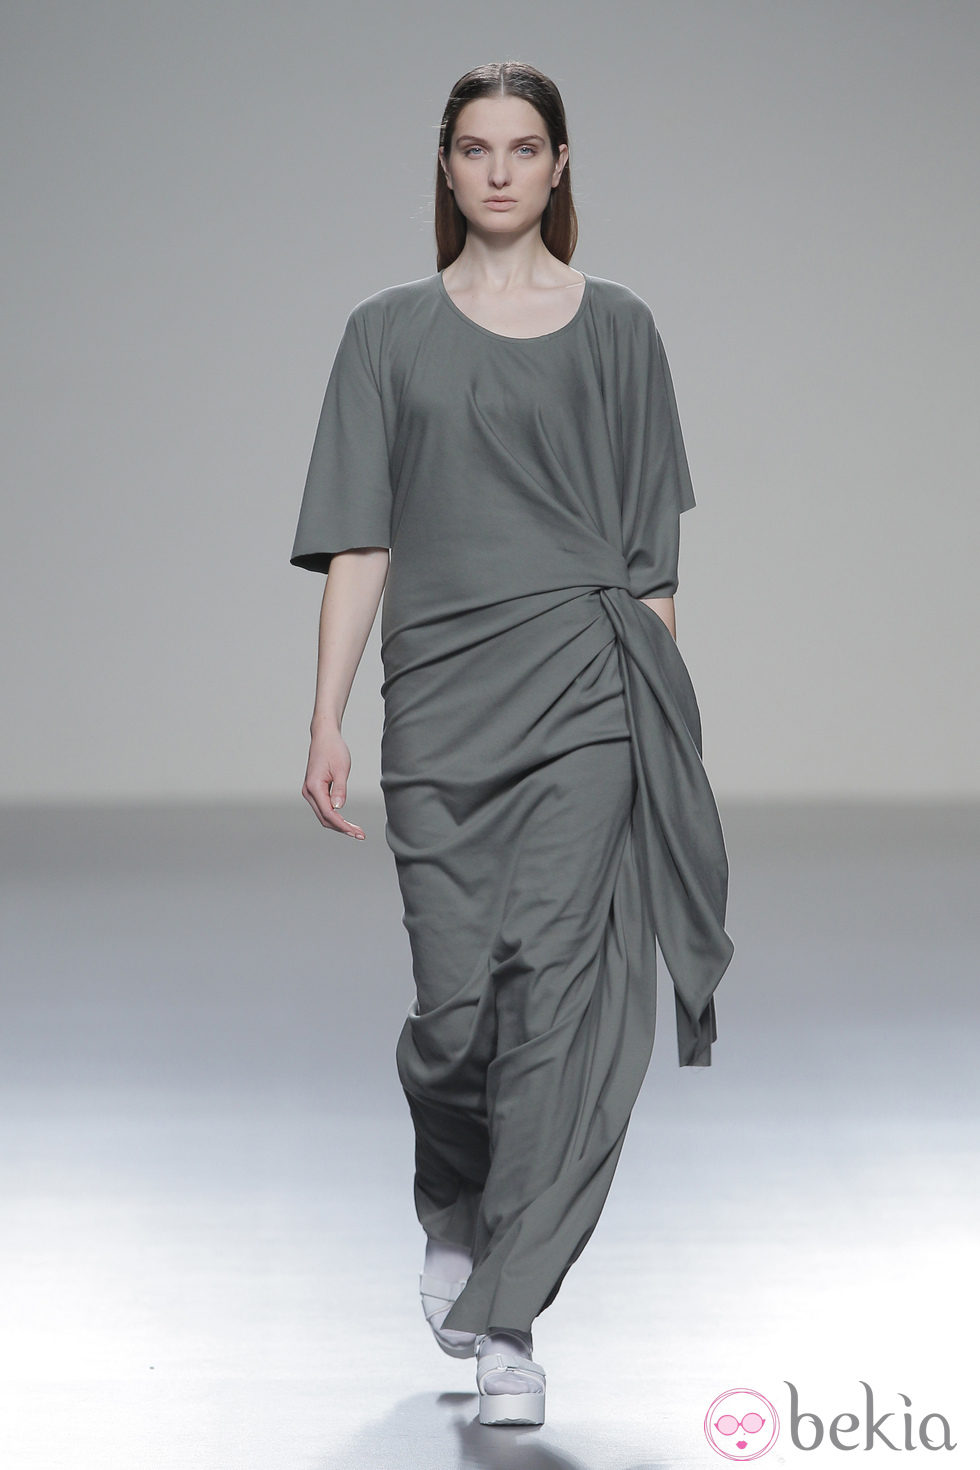 Vestido gris de la colección otoño/invierno 2013/2014 de Pepa Salazar en Madrid Fashion Week